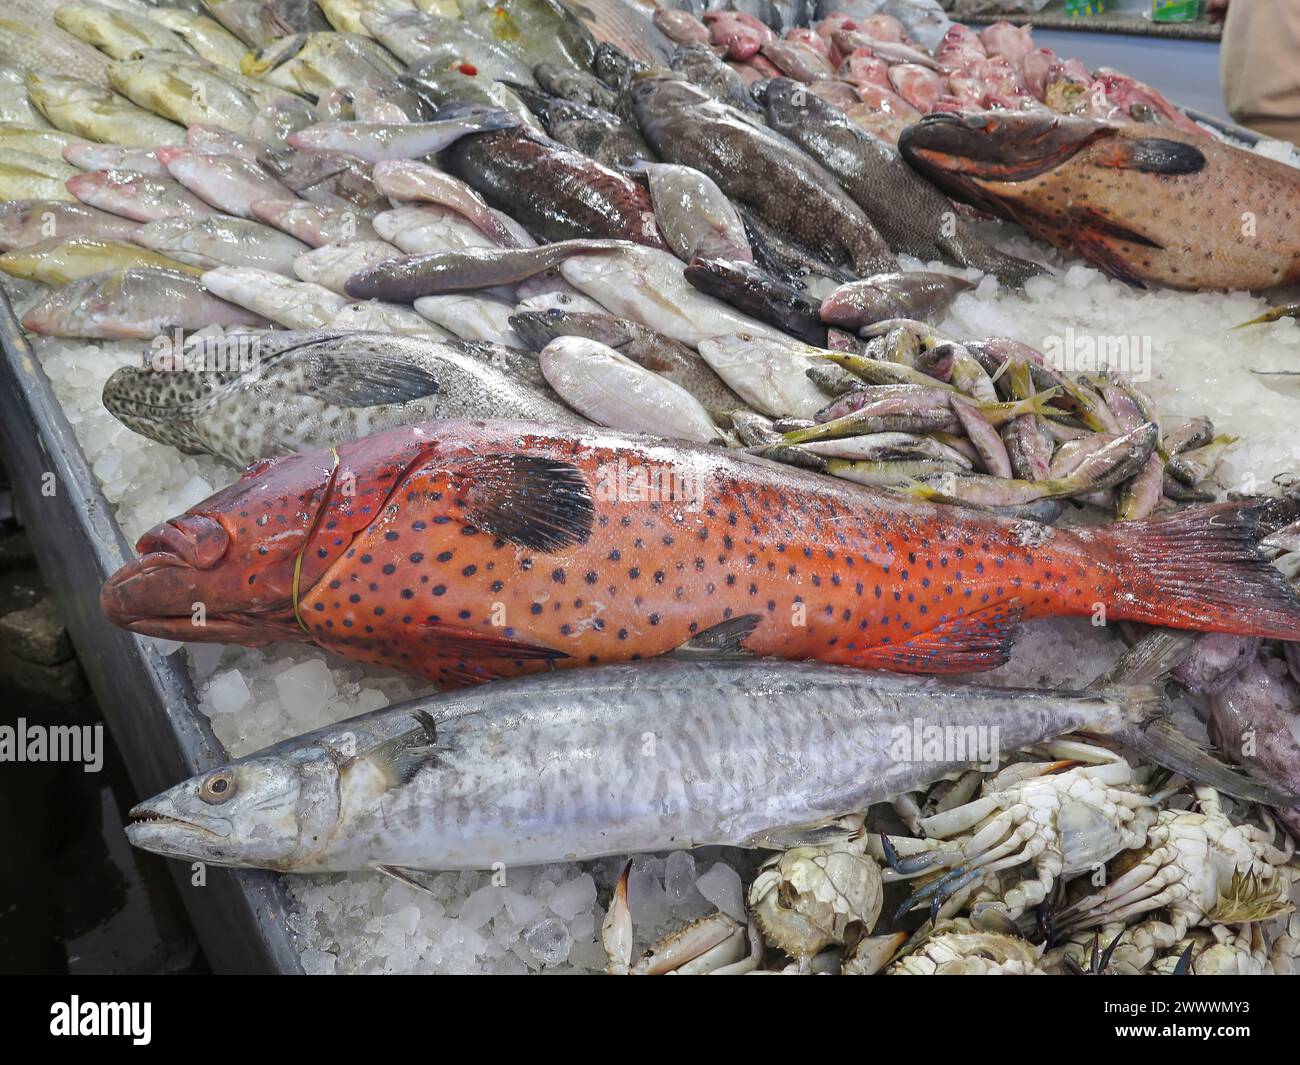 Juwelenbarsch und andere Fische im Fischmarkt von Hurghada, Ägypten Banque D'Images